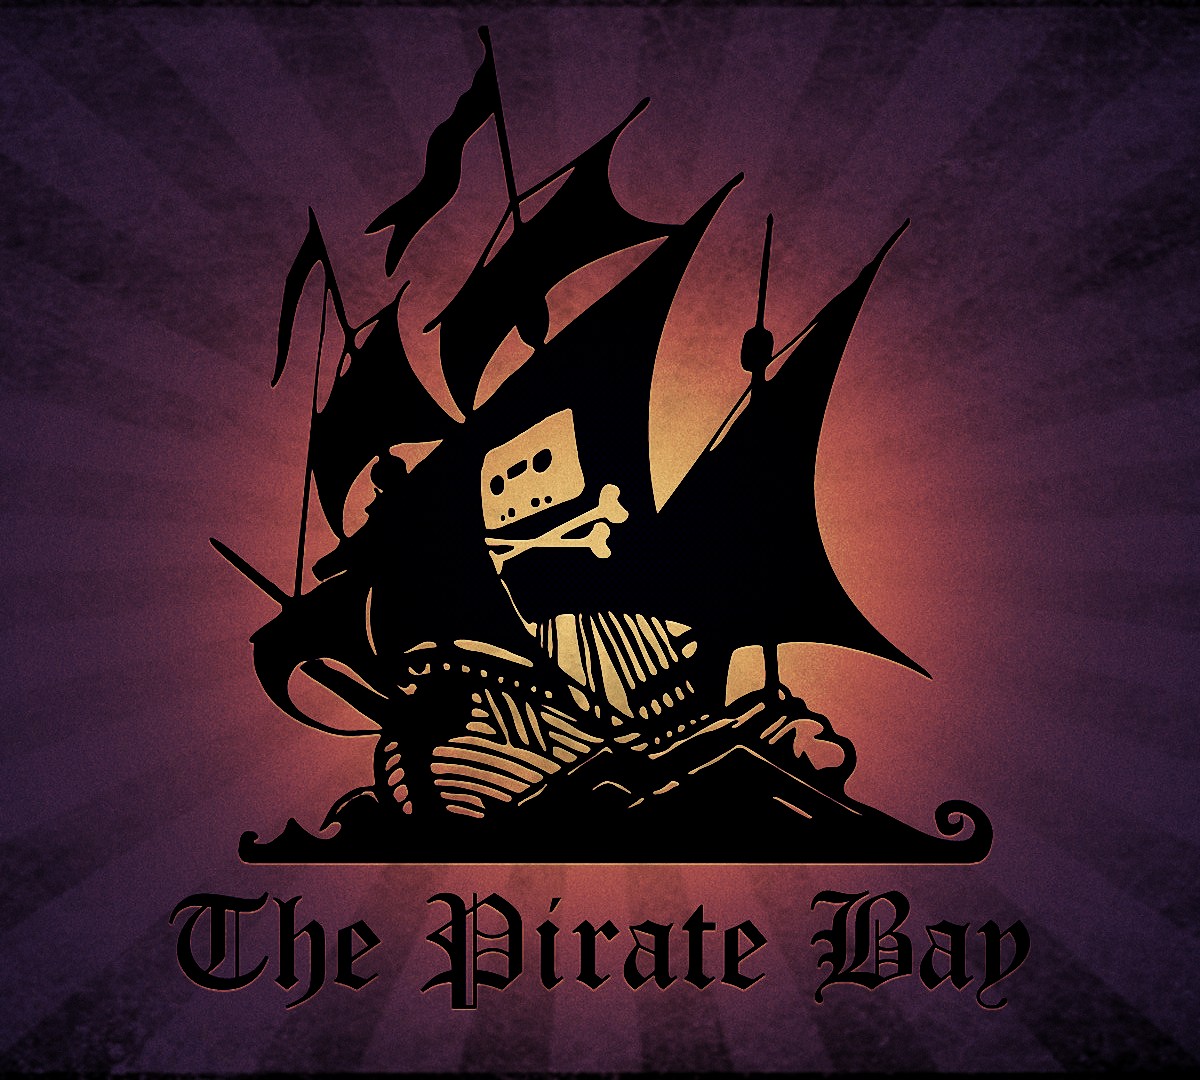 Ameaça à Netflix? The Pirate Bay começa a testar serviço de streaming